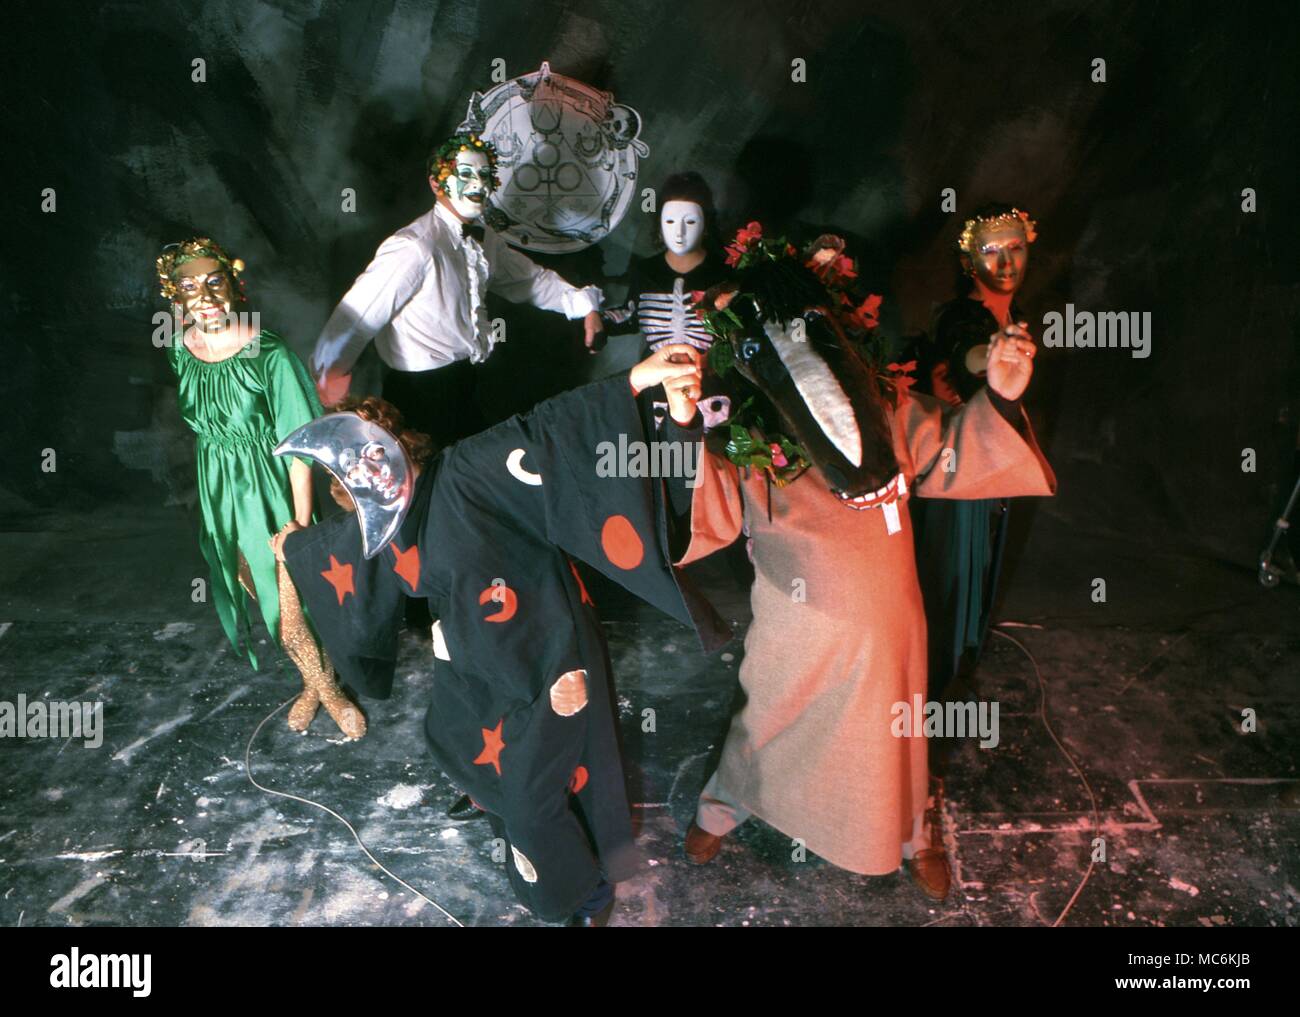 Un gruppo di persone in una stregoneria burlesque, vestito in costumi stravaganti e maschere, balli all'interno di un cerchio magico. Foto Stock